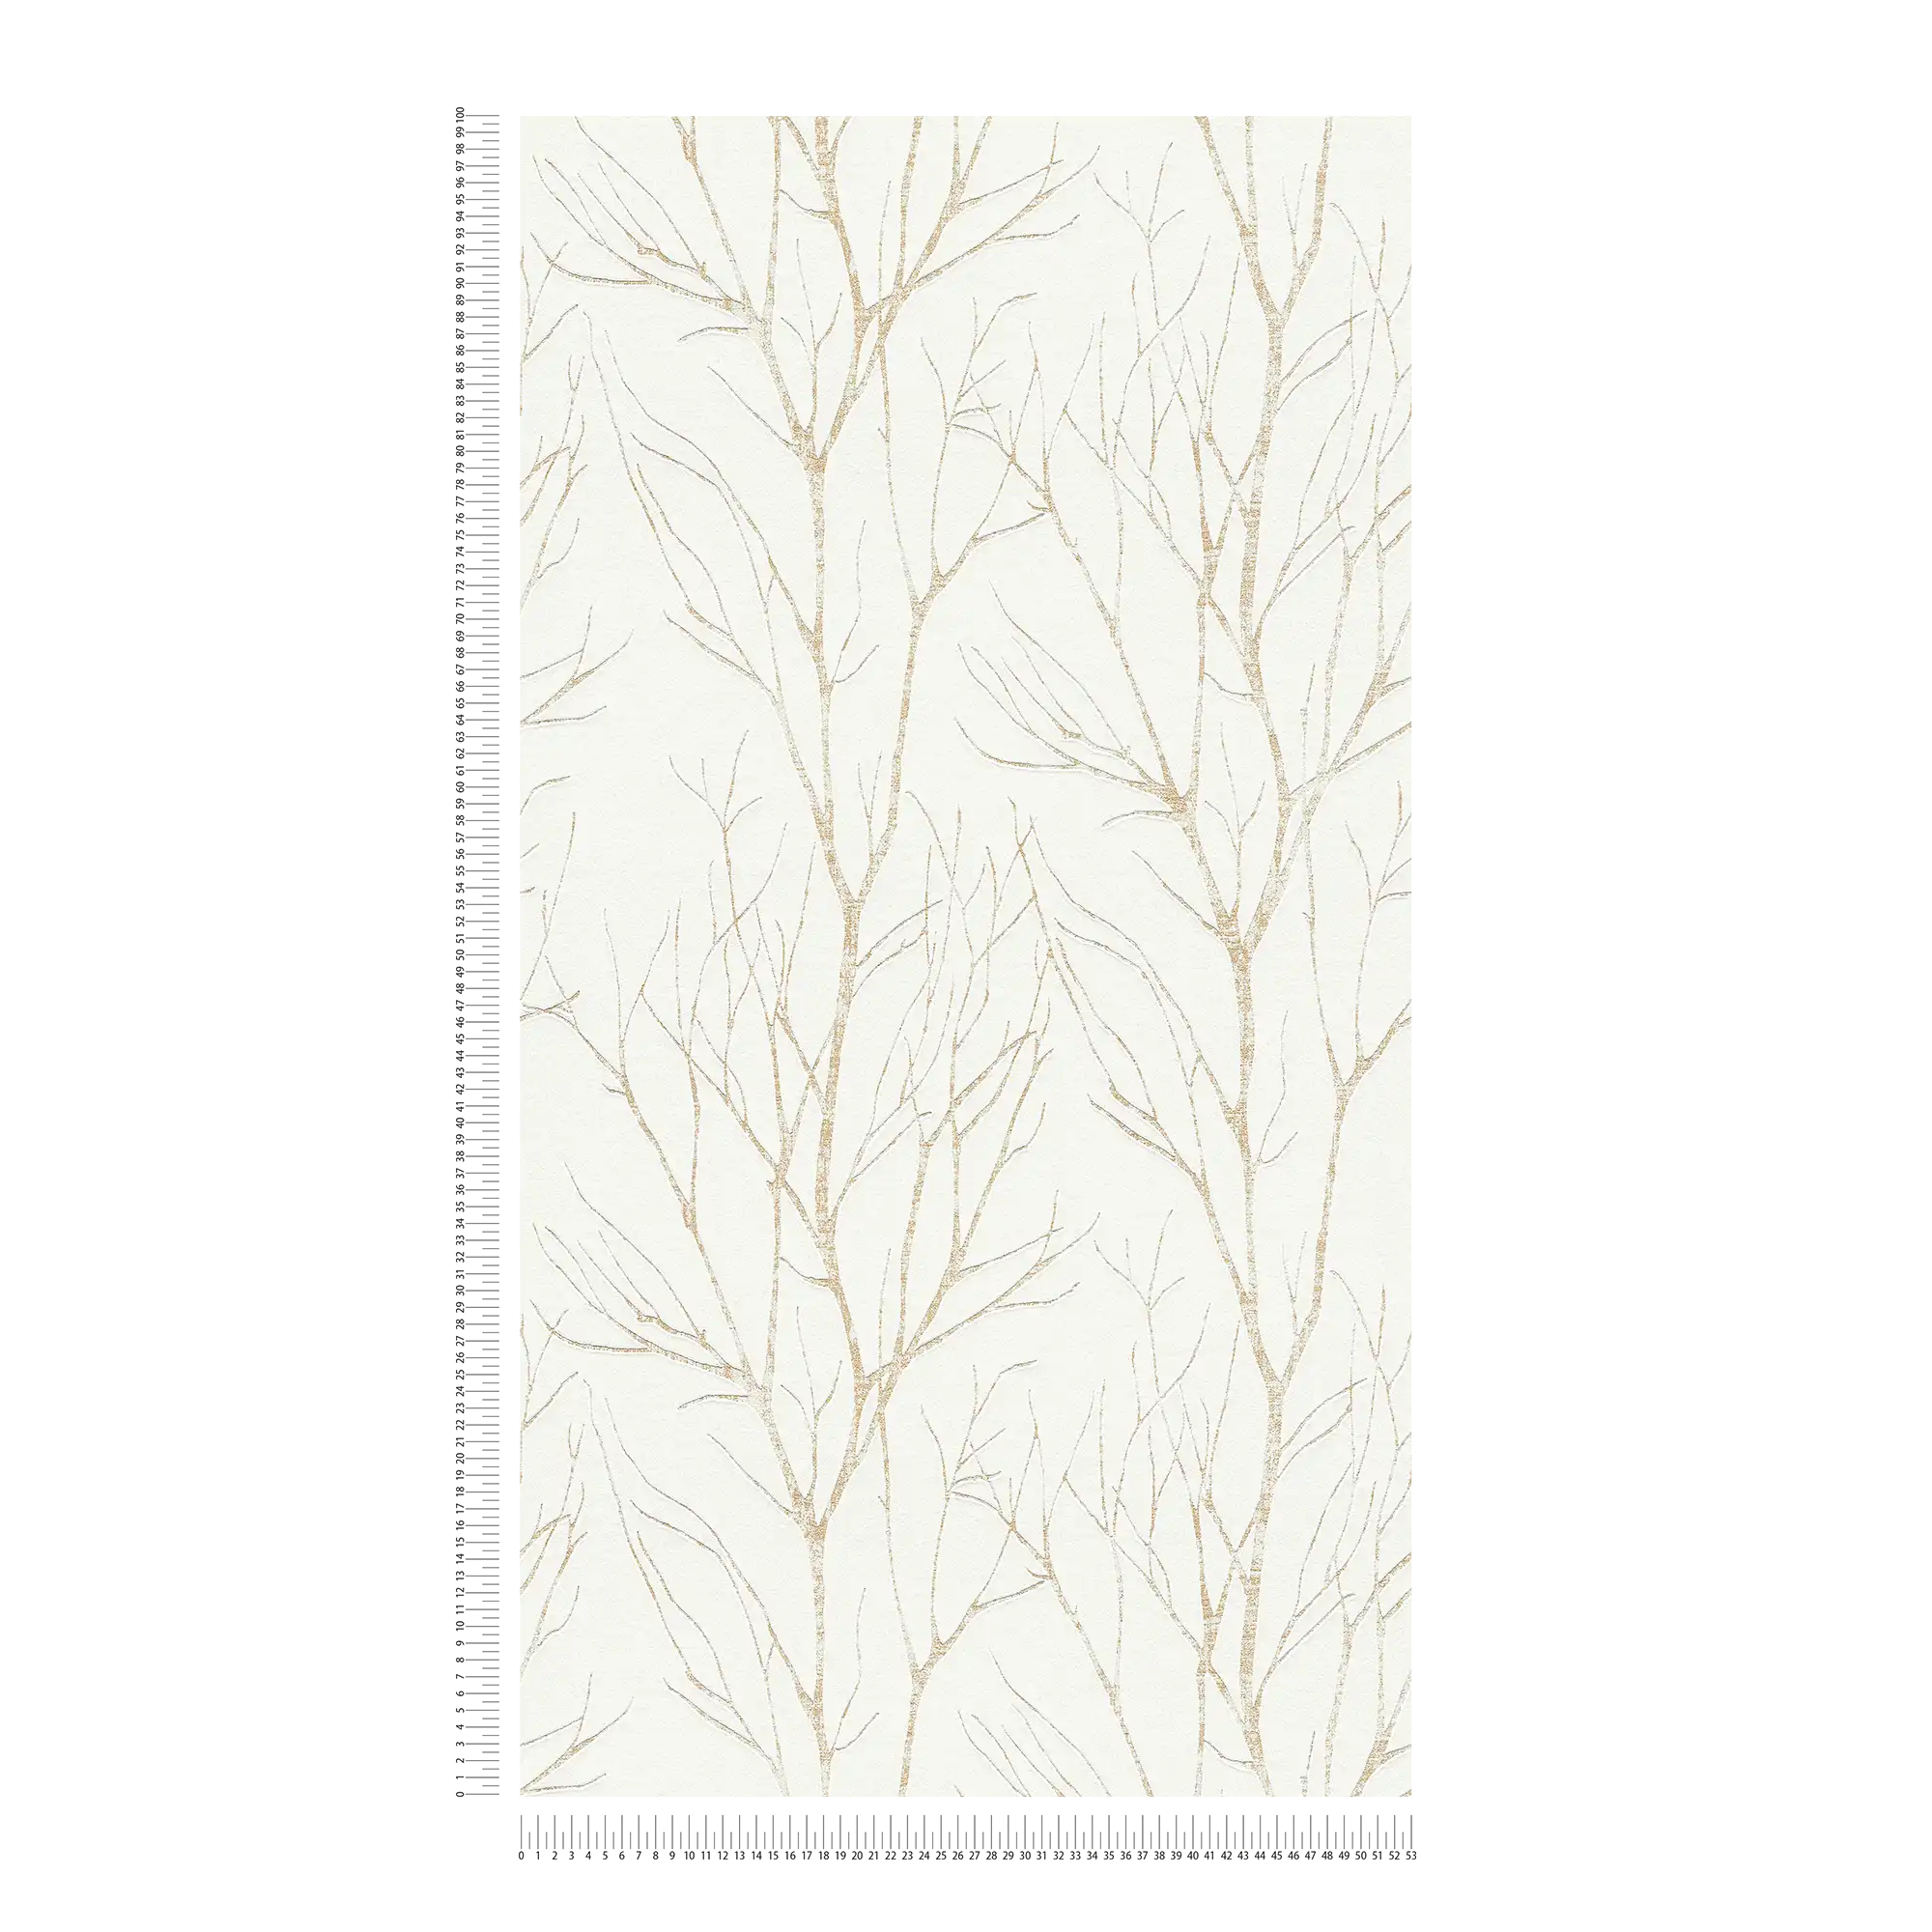             Papel pintado no tejido con motivo de árbol y efecto metálico - beige, crema, metálico
        